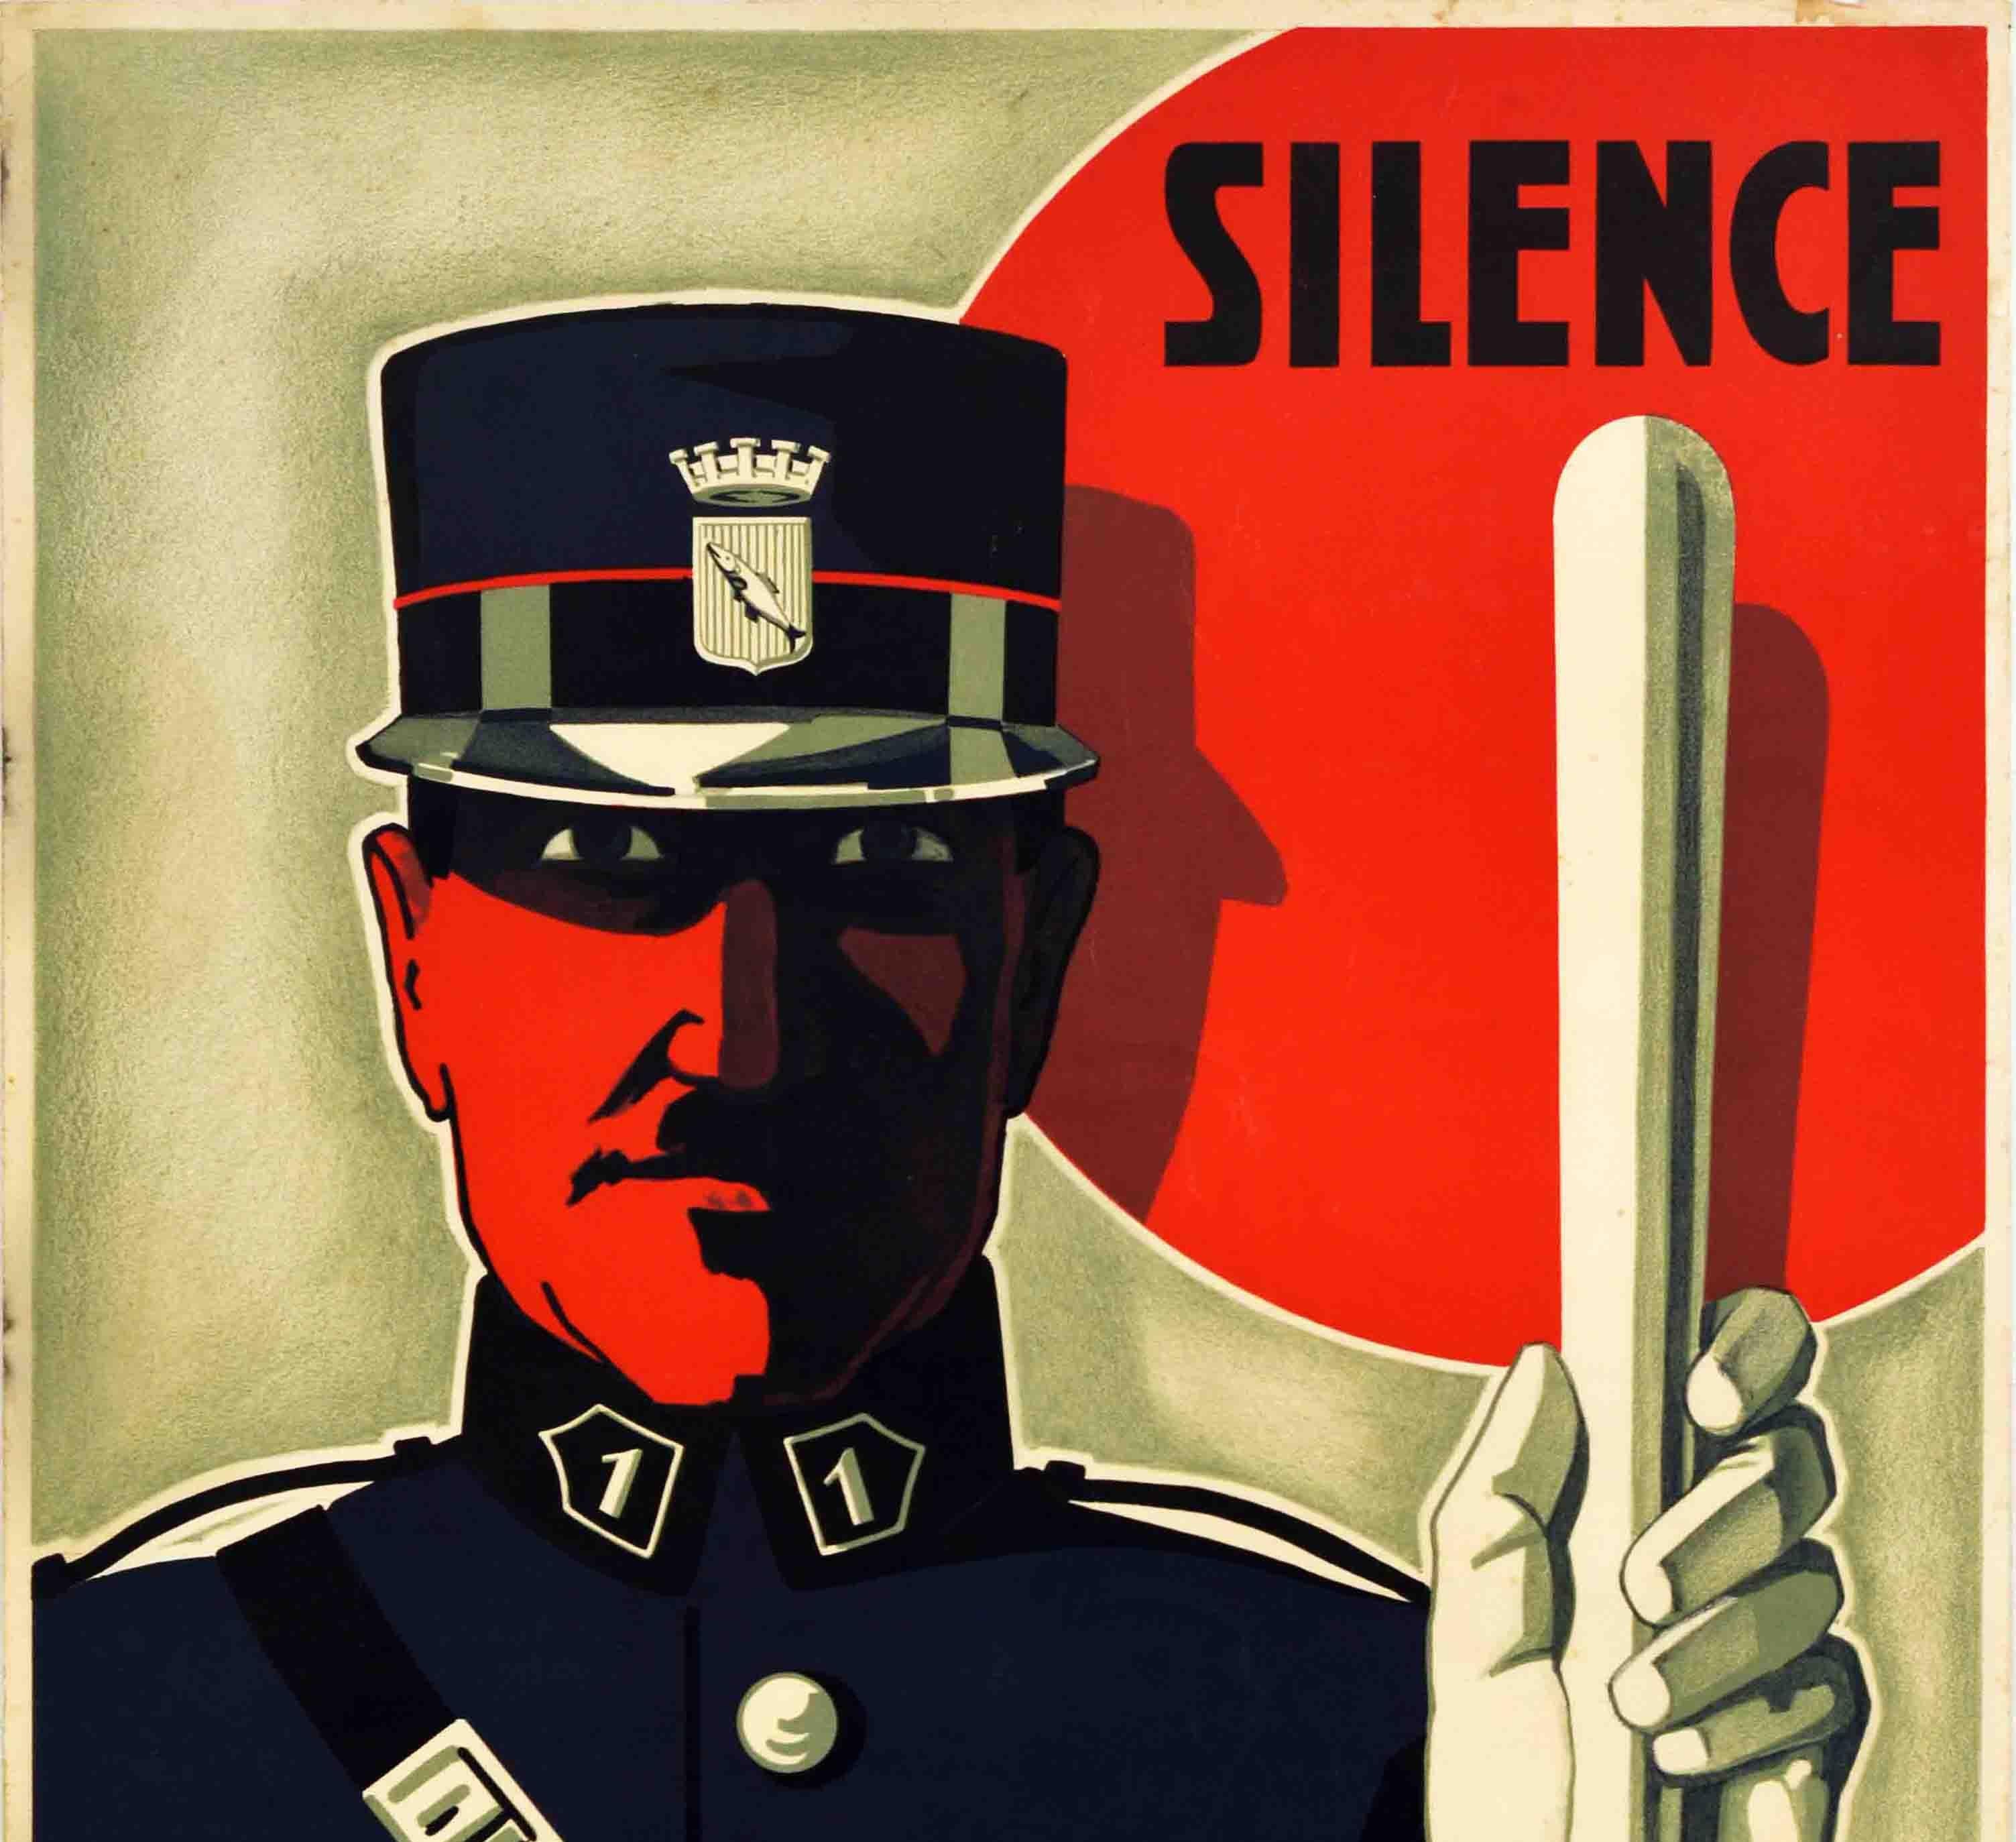 Affiche rétro originale « Silence Noise Is Harmful Police » (Les bruits de police sont nuisibles), design Art déco - Print de Unknown